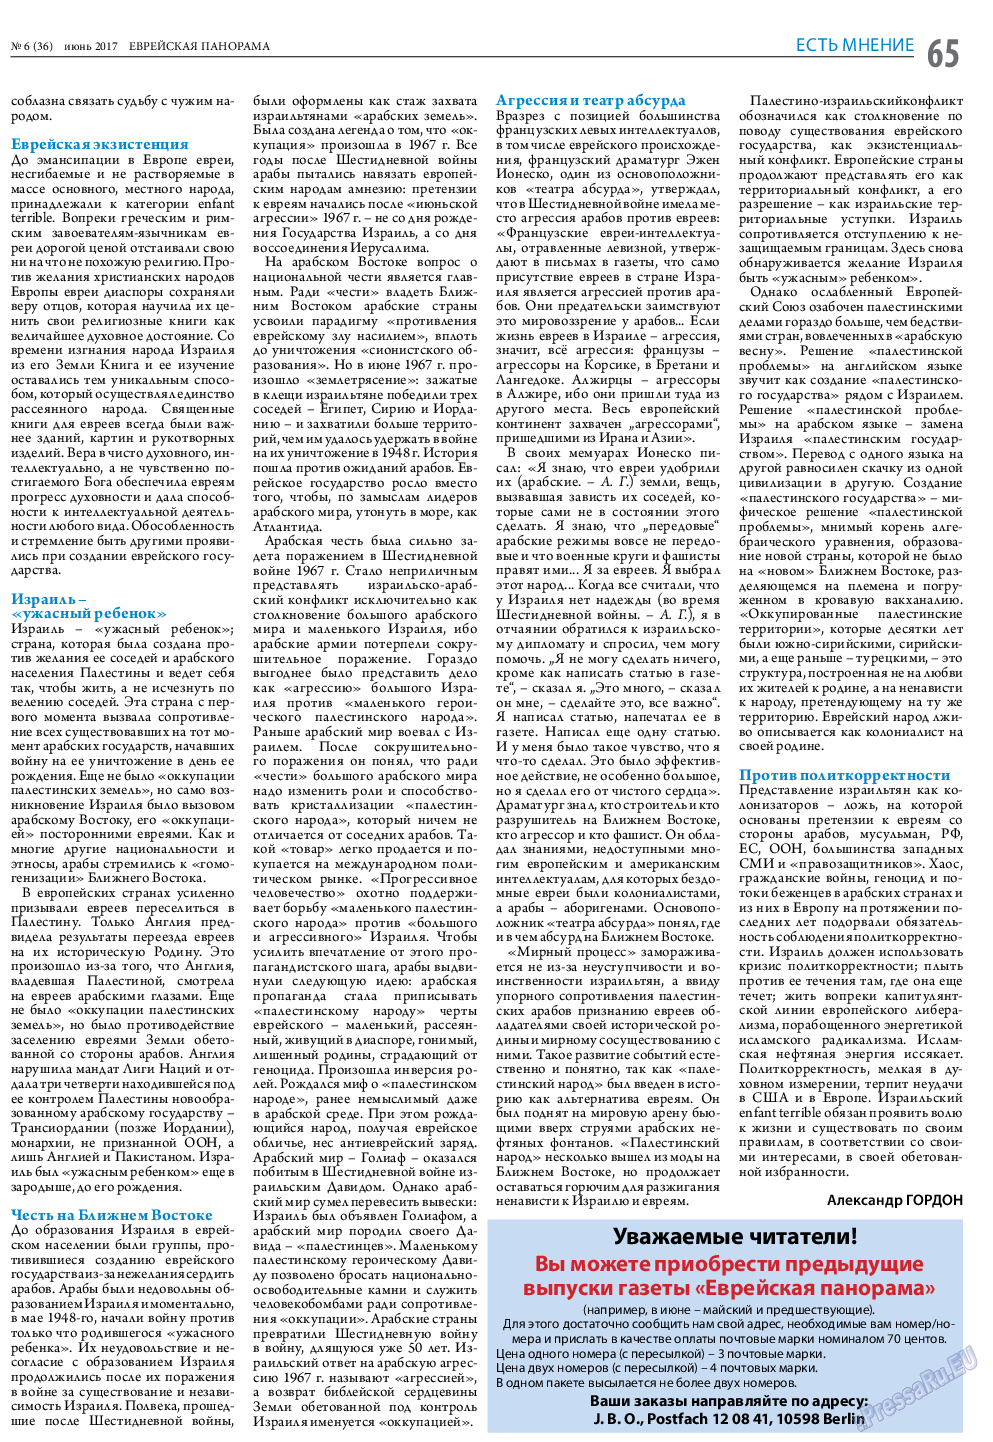 Еврейская панорама (газета). 2017 год, номер 6, стр. 65